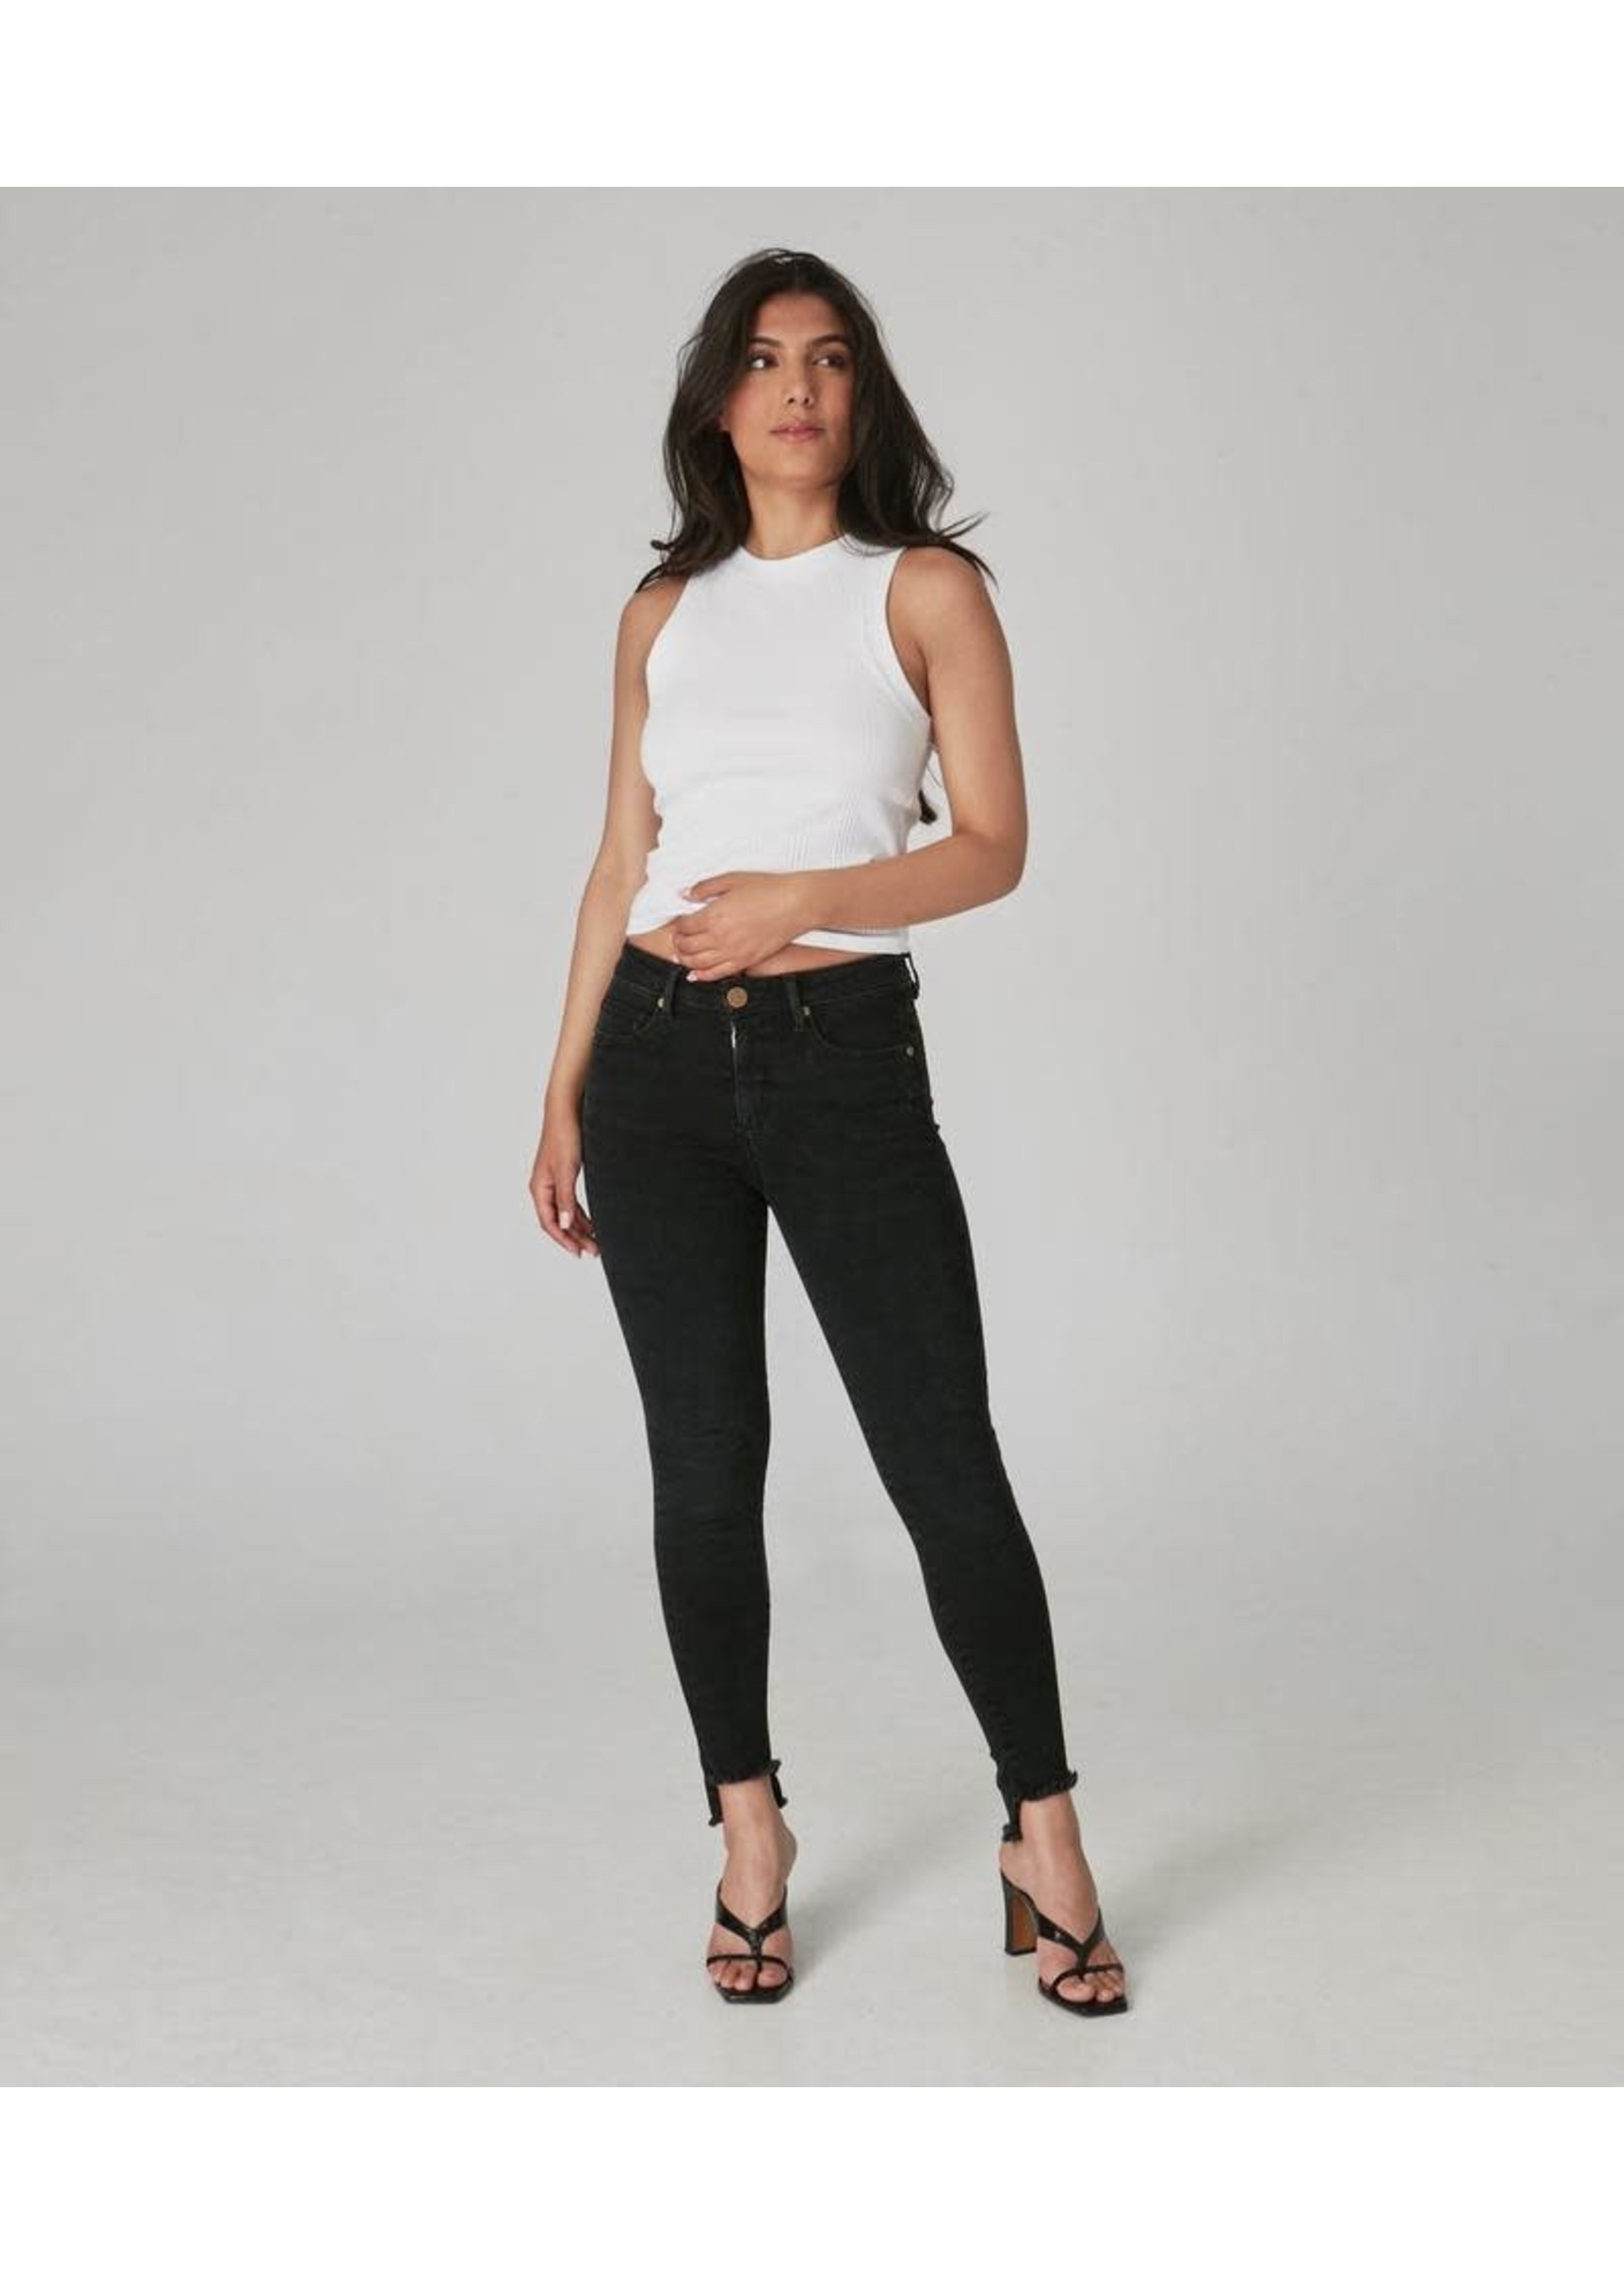 Lola Jeans Alexa-High-Rise Skinny Jeans - Rugged Black